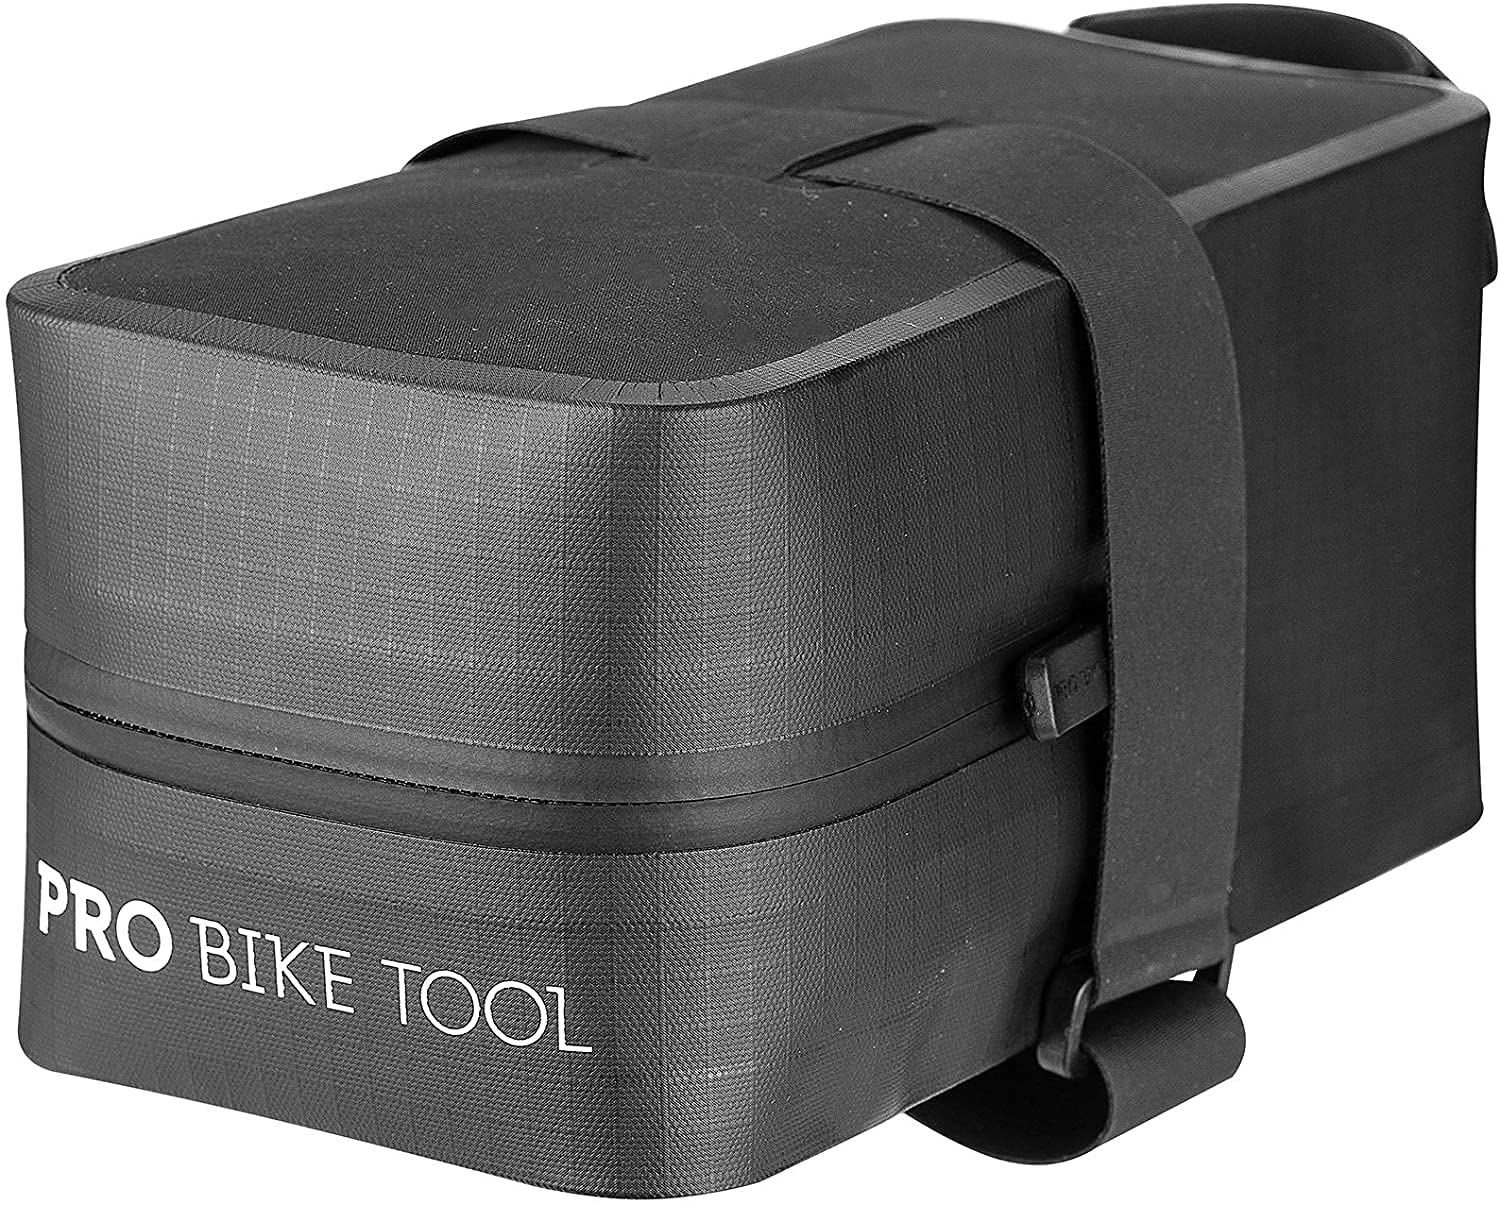 PRO BIKE TOOL Fahrrad Satteltasche - Gurt unter dem Sitz Satteltaschen für Fahrrad - Rennrad oder Mountainbike - Große Größe - Fahrrad Zubehör - Fahrrad Tasche (Größe Groß) von PRO BIKE TOOL